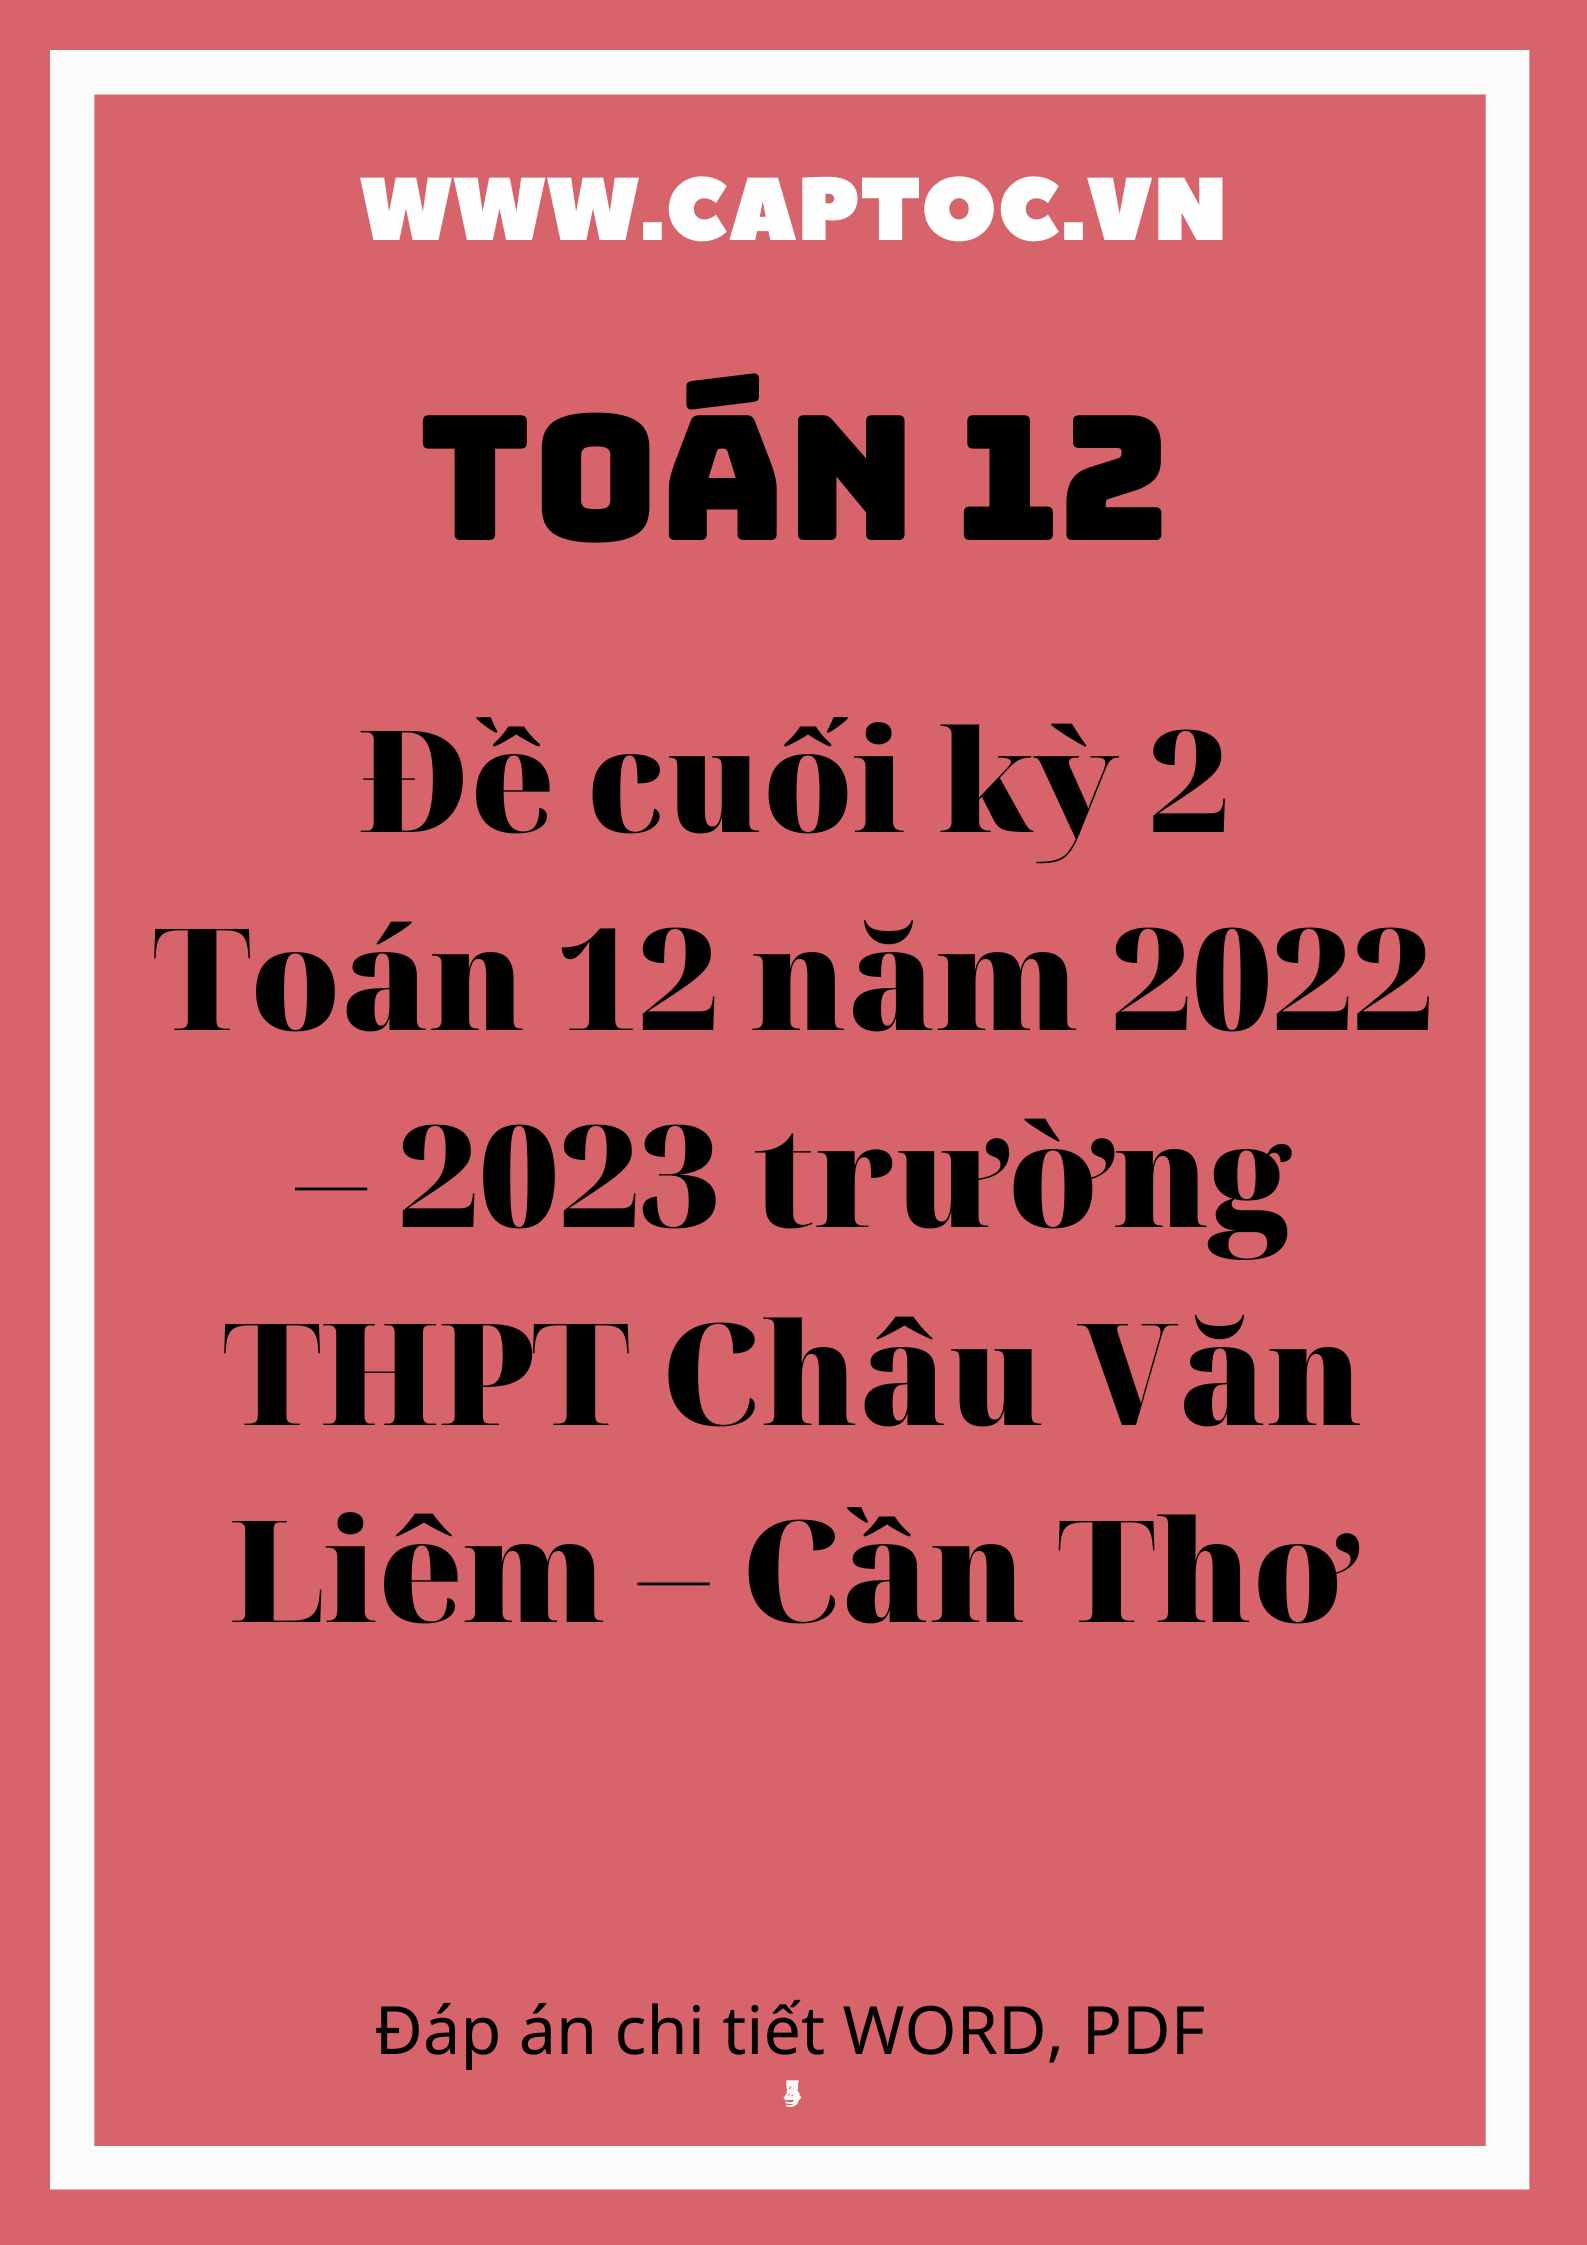 Đề cuối kỳ 2 Toán 12 năm 2022 – 2023 trường THPT Châu Văn Liêm – Cần Thơ